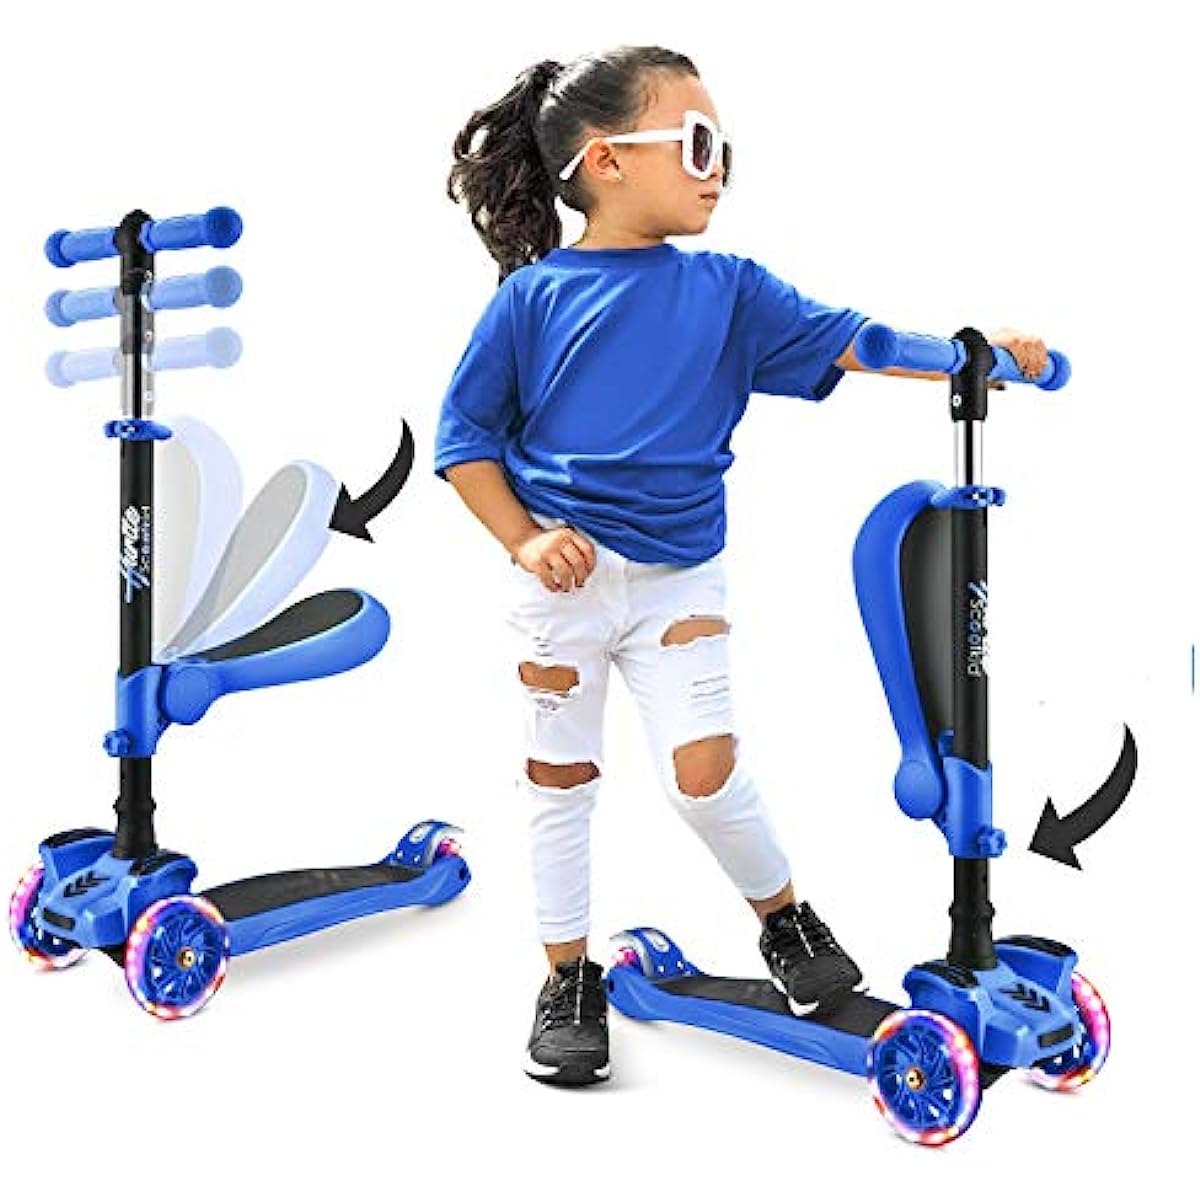 3-hjulig skoter för barnställ/småbarn Leksakshopfällbara sparksparkcyklar med justerbar höjd Anti-slip däck blinkande hjulljus för pojkar/flickor 2-12 år Hurtle